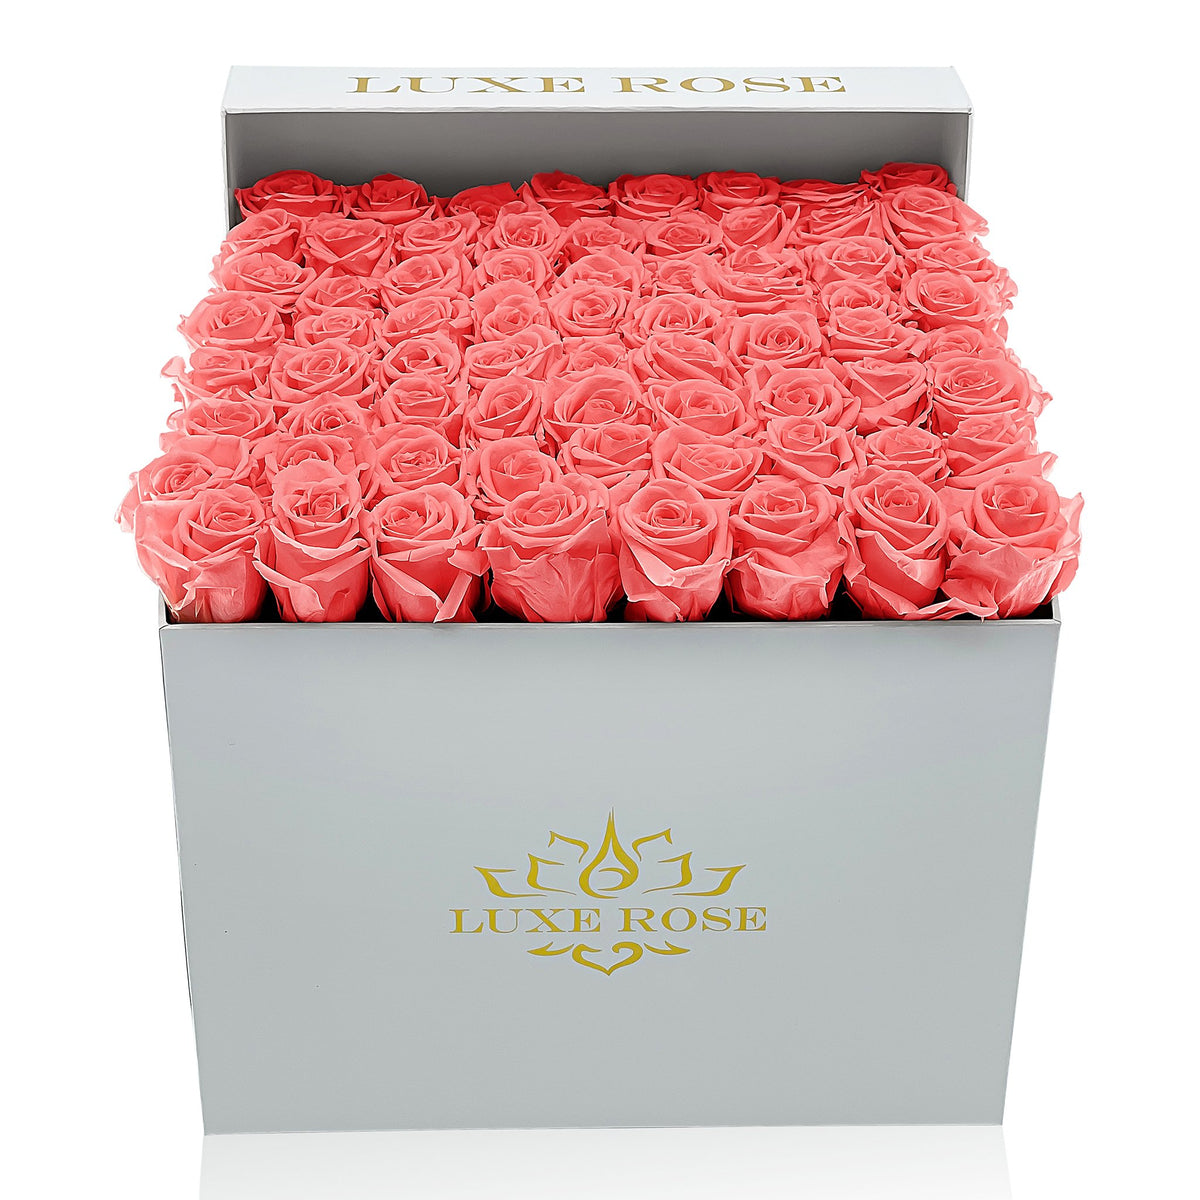 Preserved Roses Large Box | Cherry Blossom - White - Roses